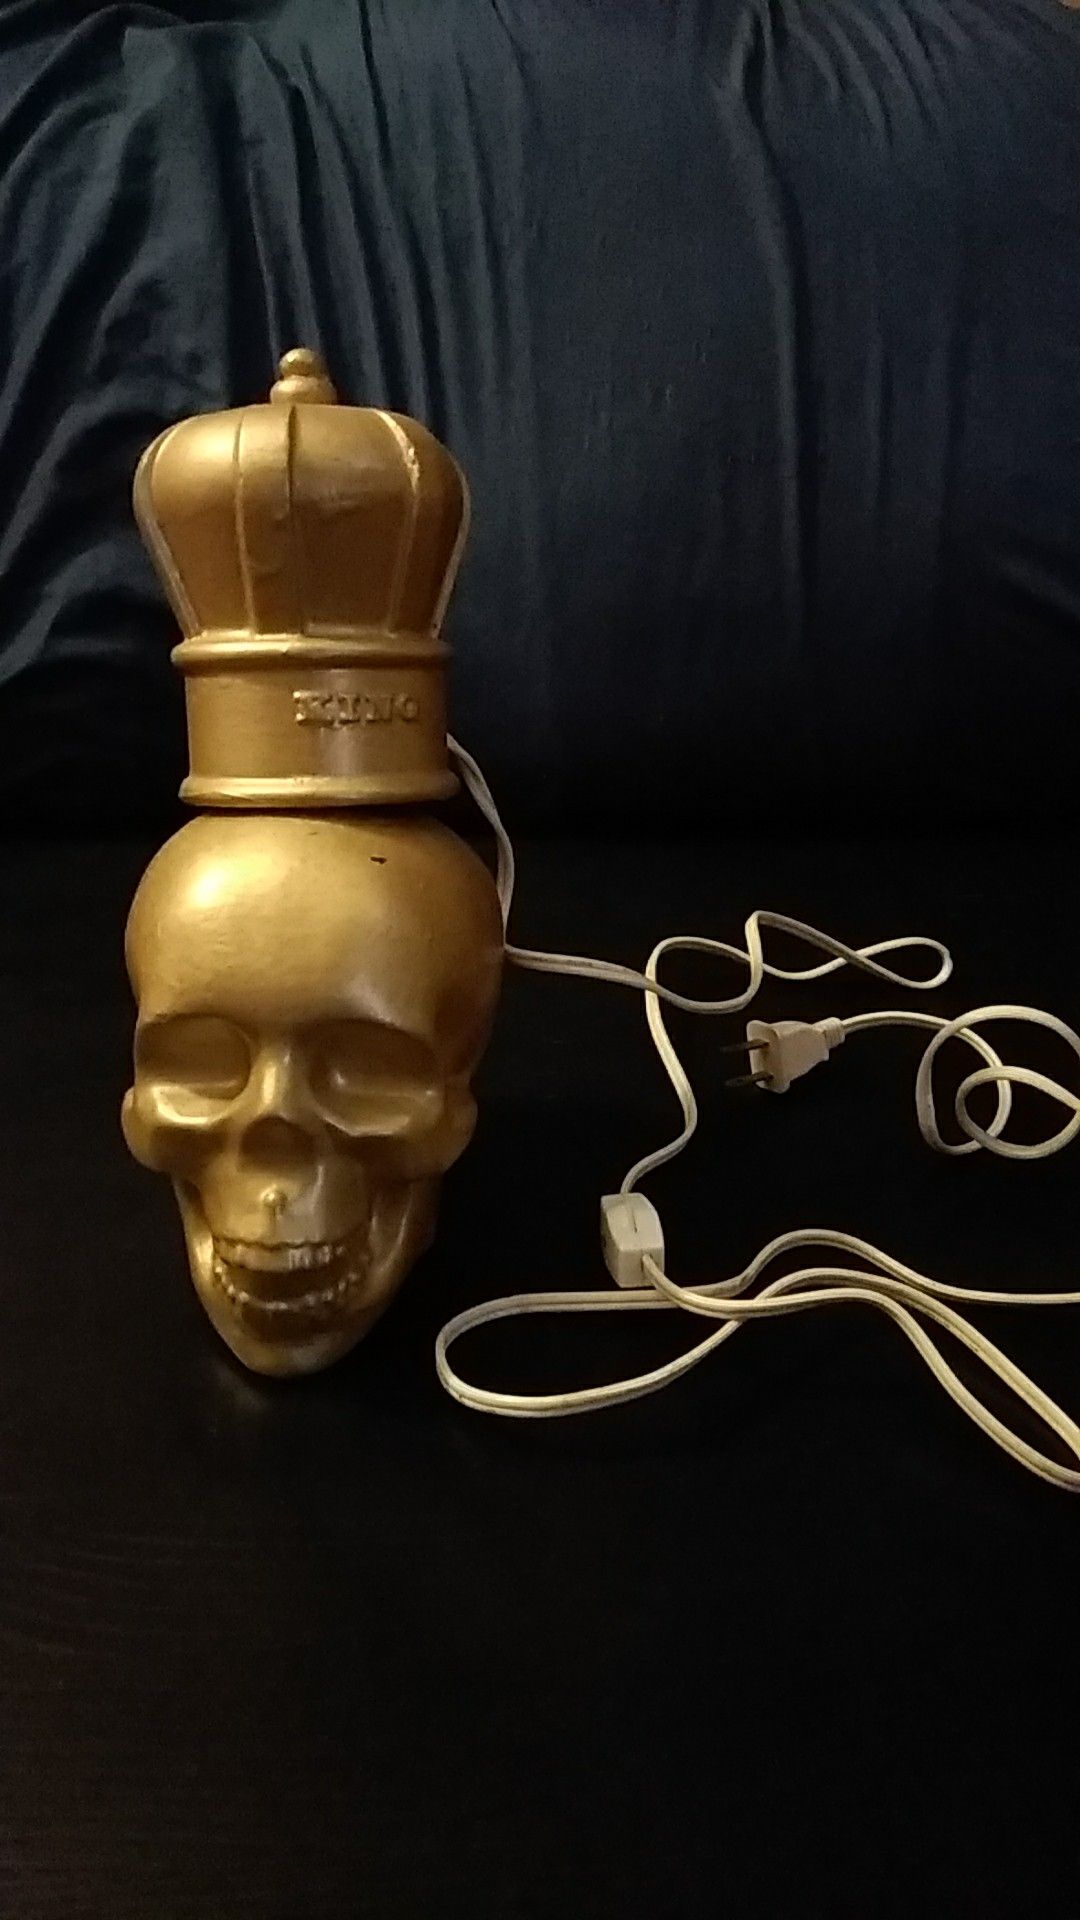 Handmade skull lamp